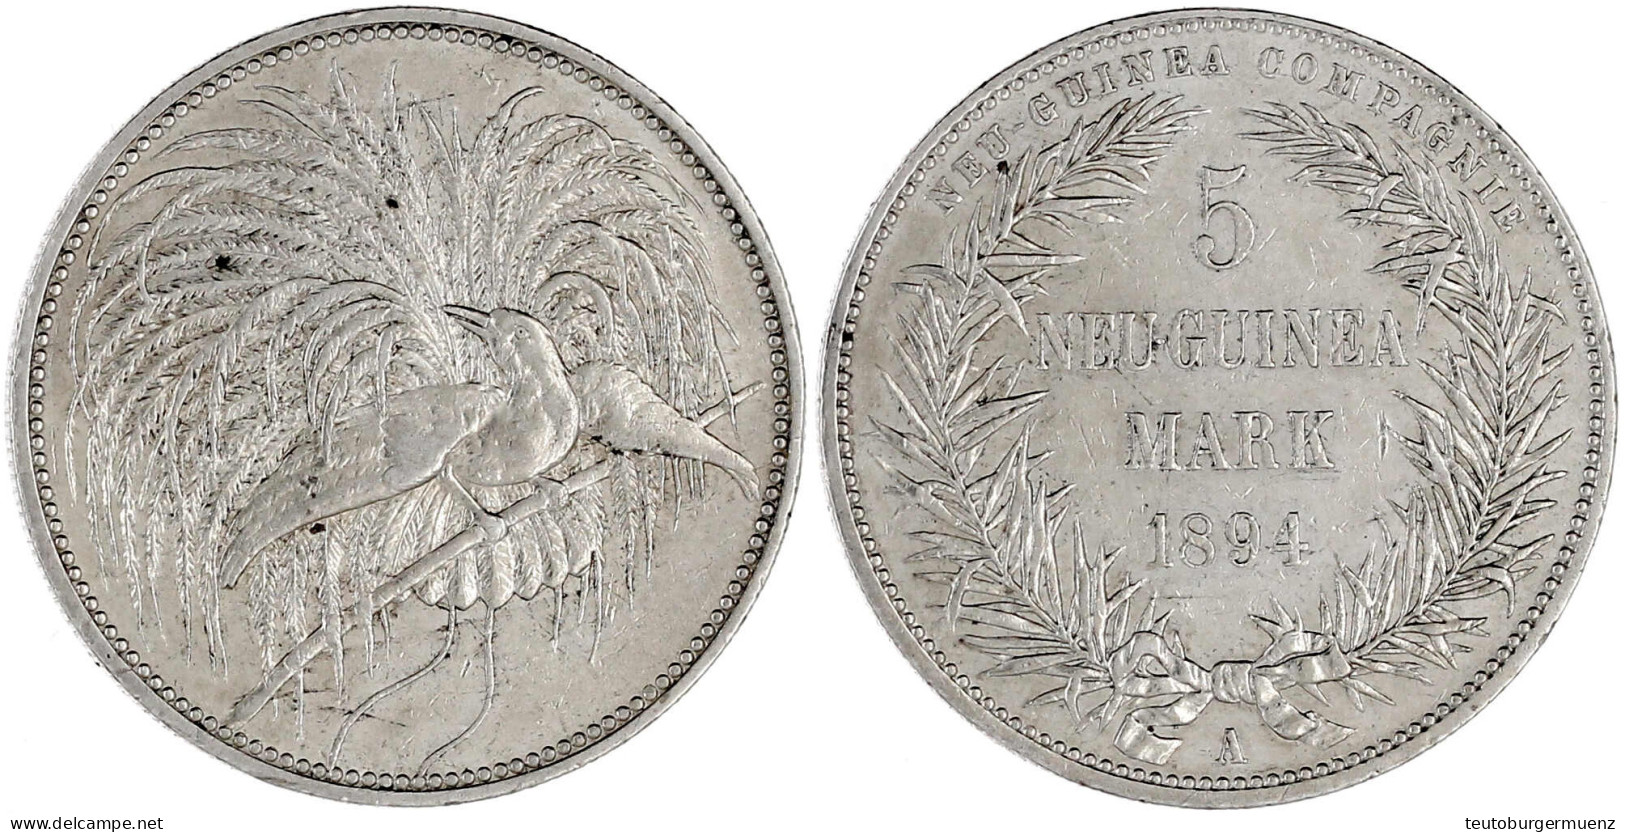 5 Neuguinea-Mark 1894 A, Paradiesvogel. Gutes Sehr Schön, Kl. Kratzer. Jaeger 707. - German New Guinea